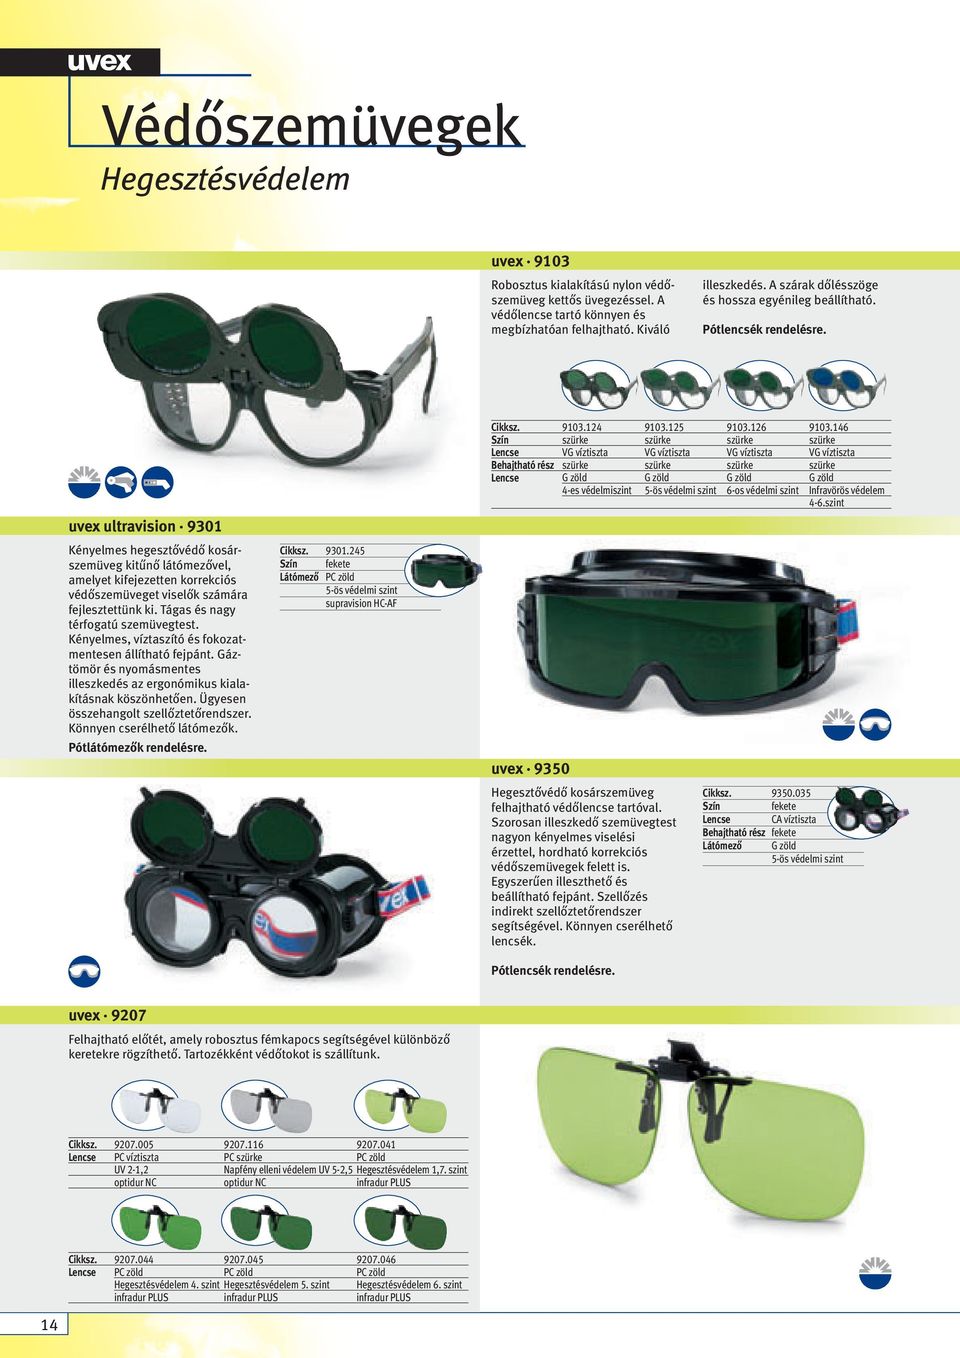 uvex ultravision 9301 Kényelmes hegesztővédő kosárszemüveg kitűnő látómezővel, amelyet kifejezetten korrekciós védőszemüveget viselők számára fejlesztettünk ki. Tágas és nagy térfogatú szemüvegtest.